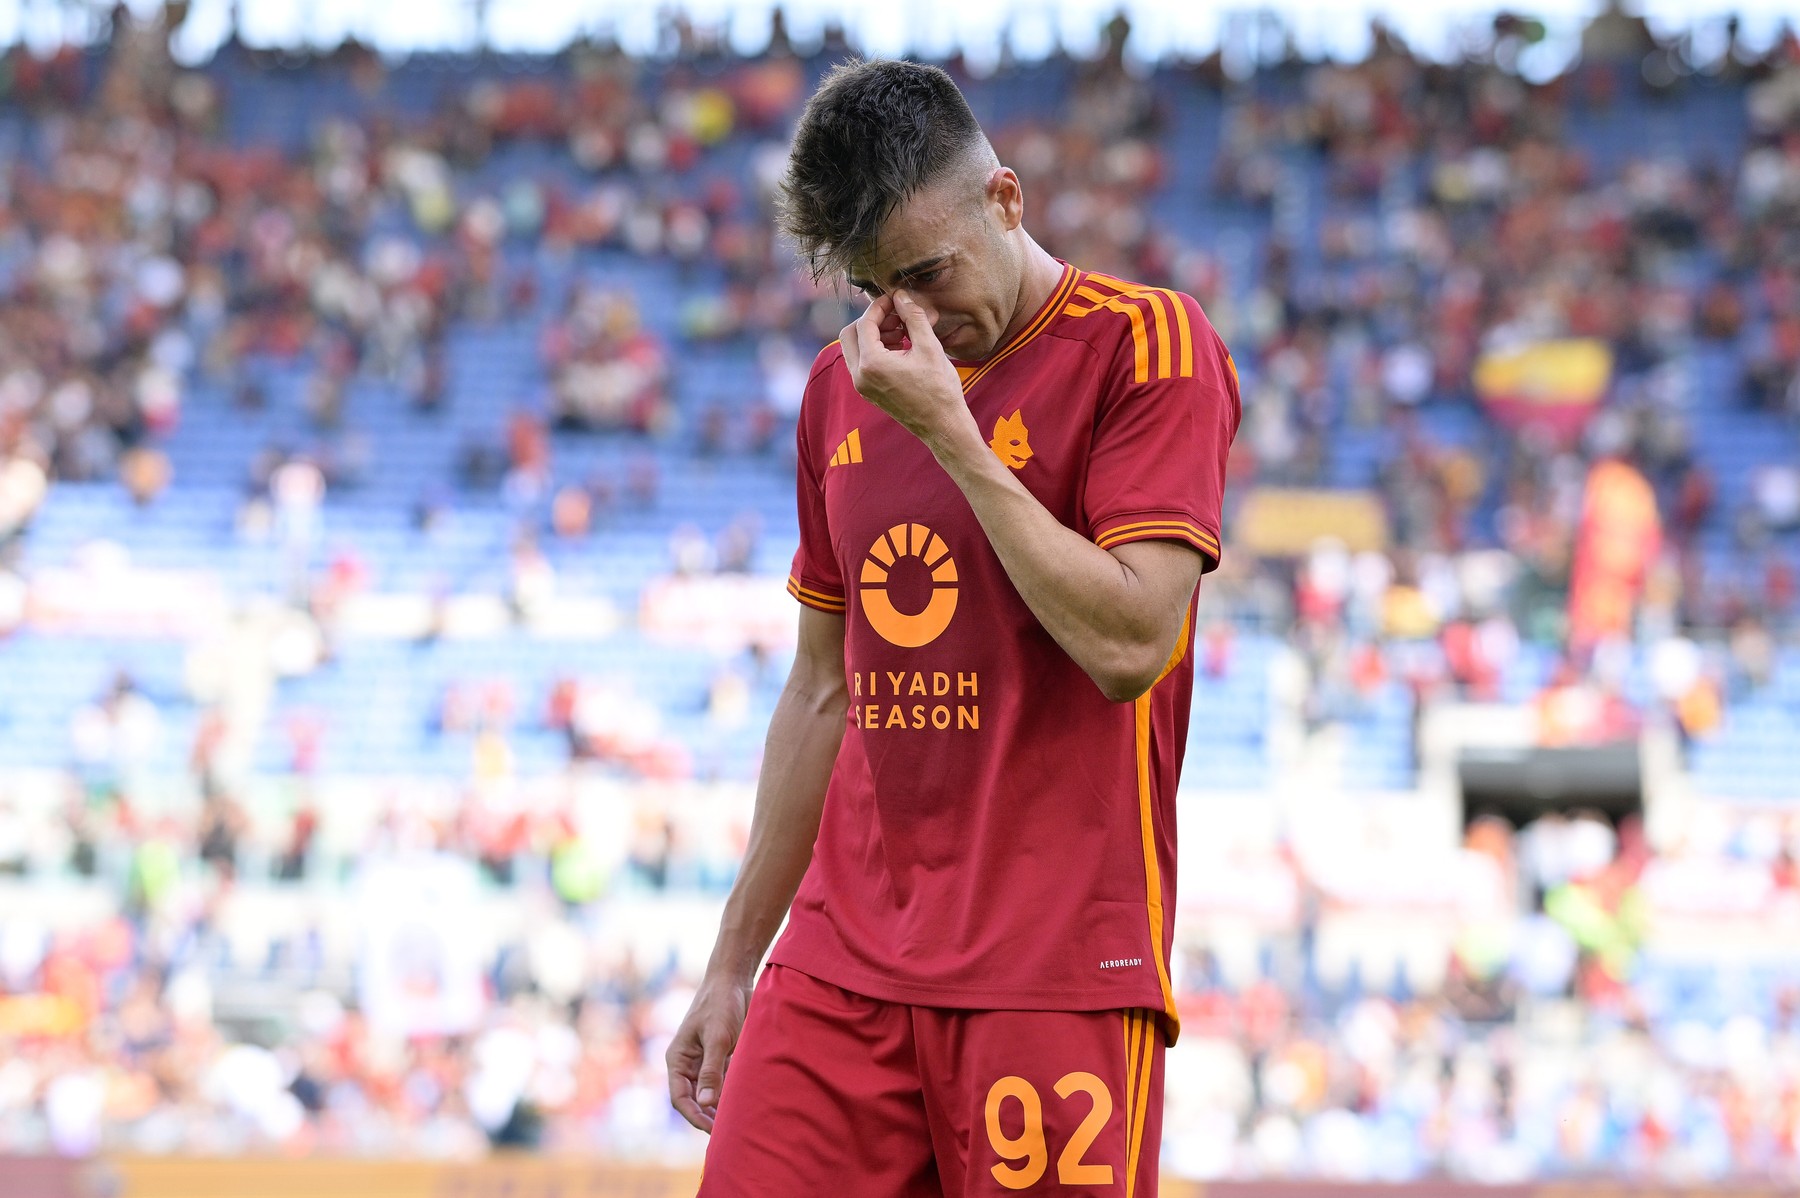 Acuzat că a pariat, Stephan El Shaarawy a izbucnit în lacrimi după ce a marcat pentru Roma: ”Doare!”